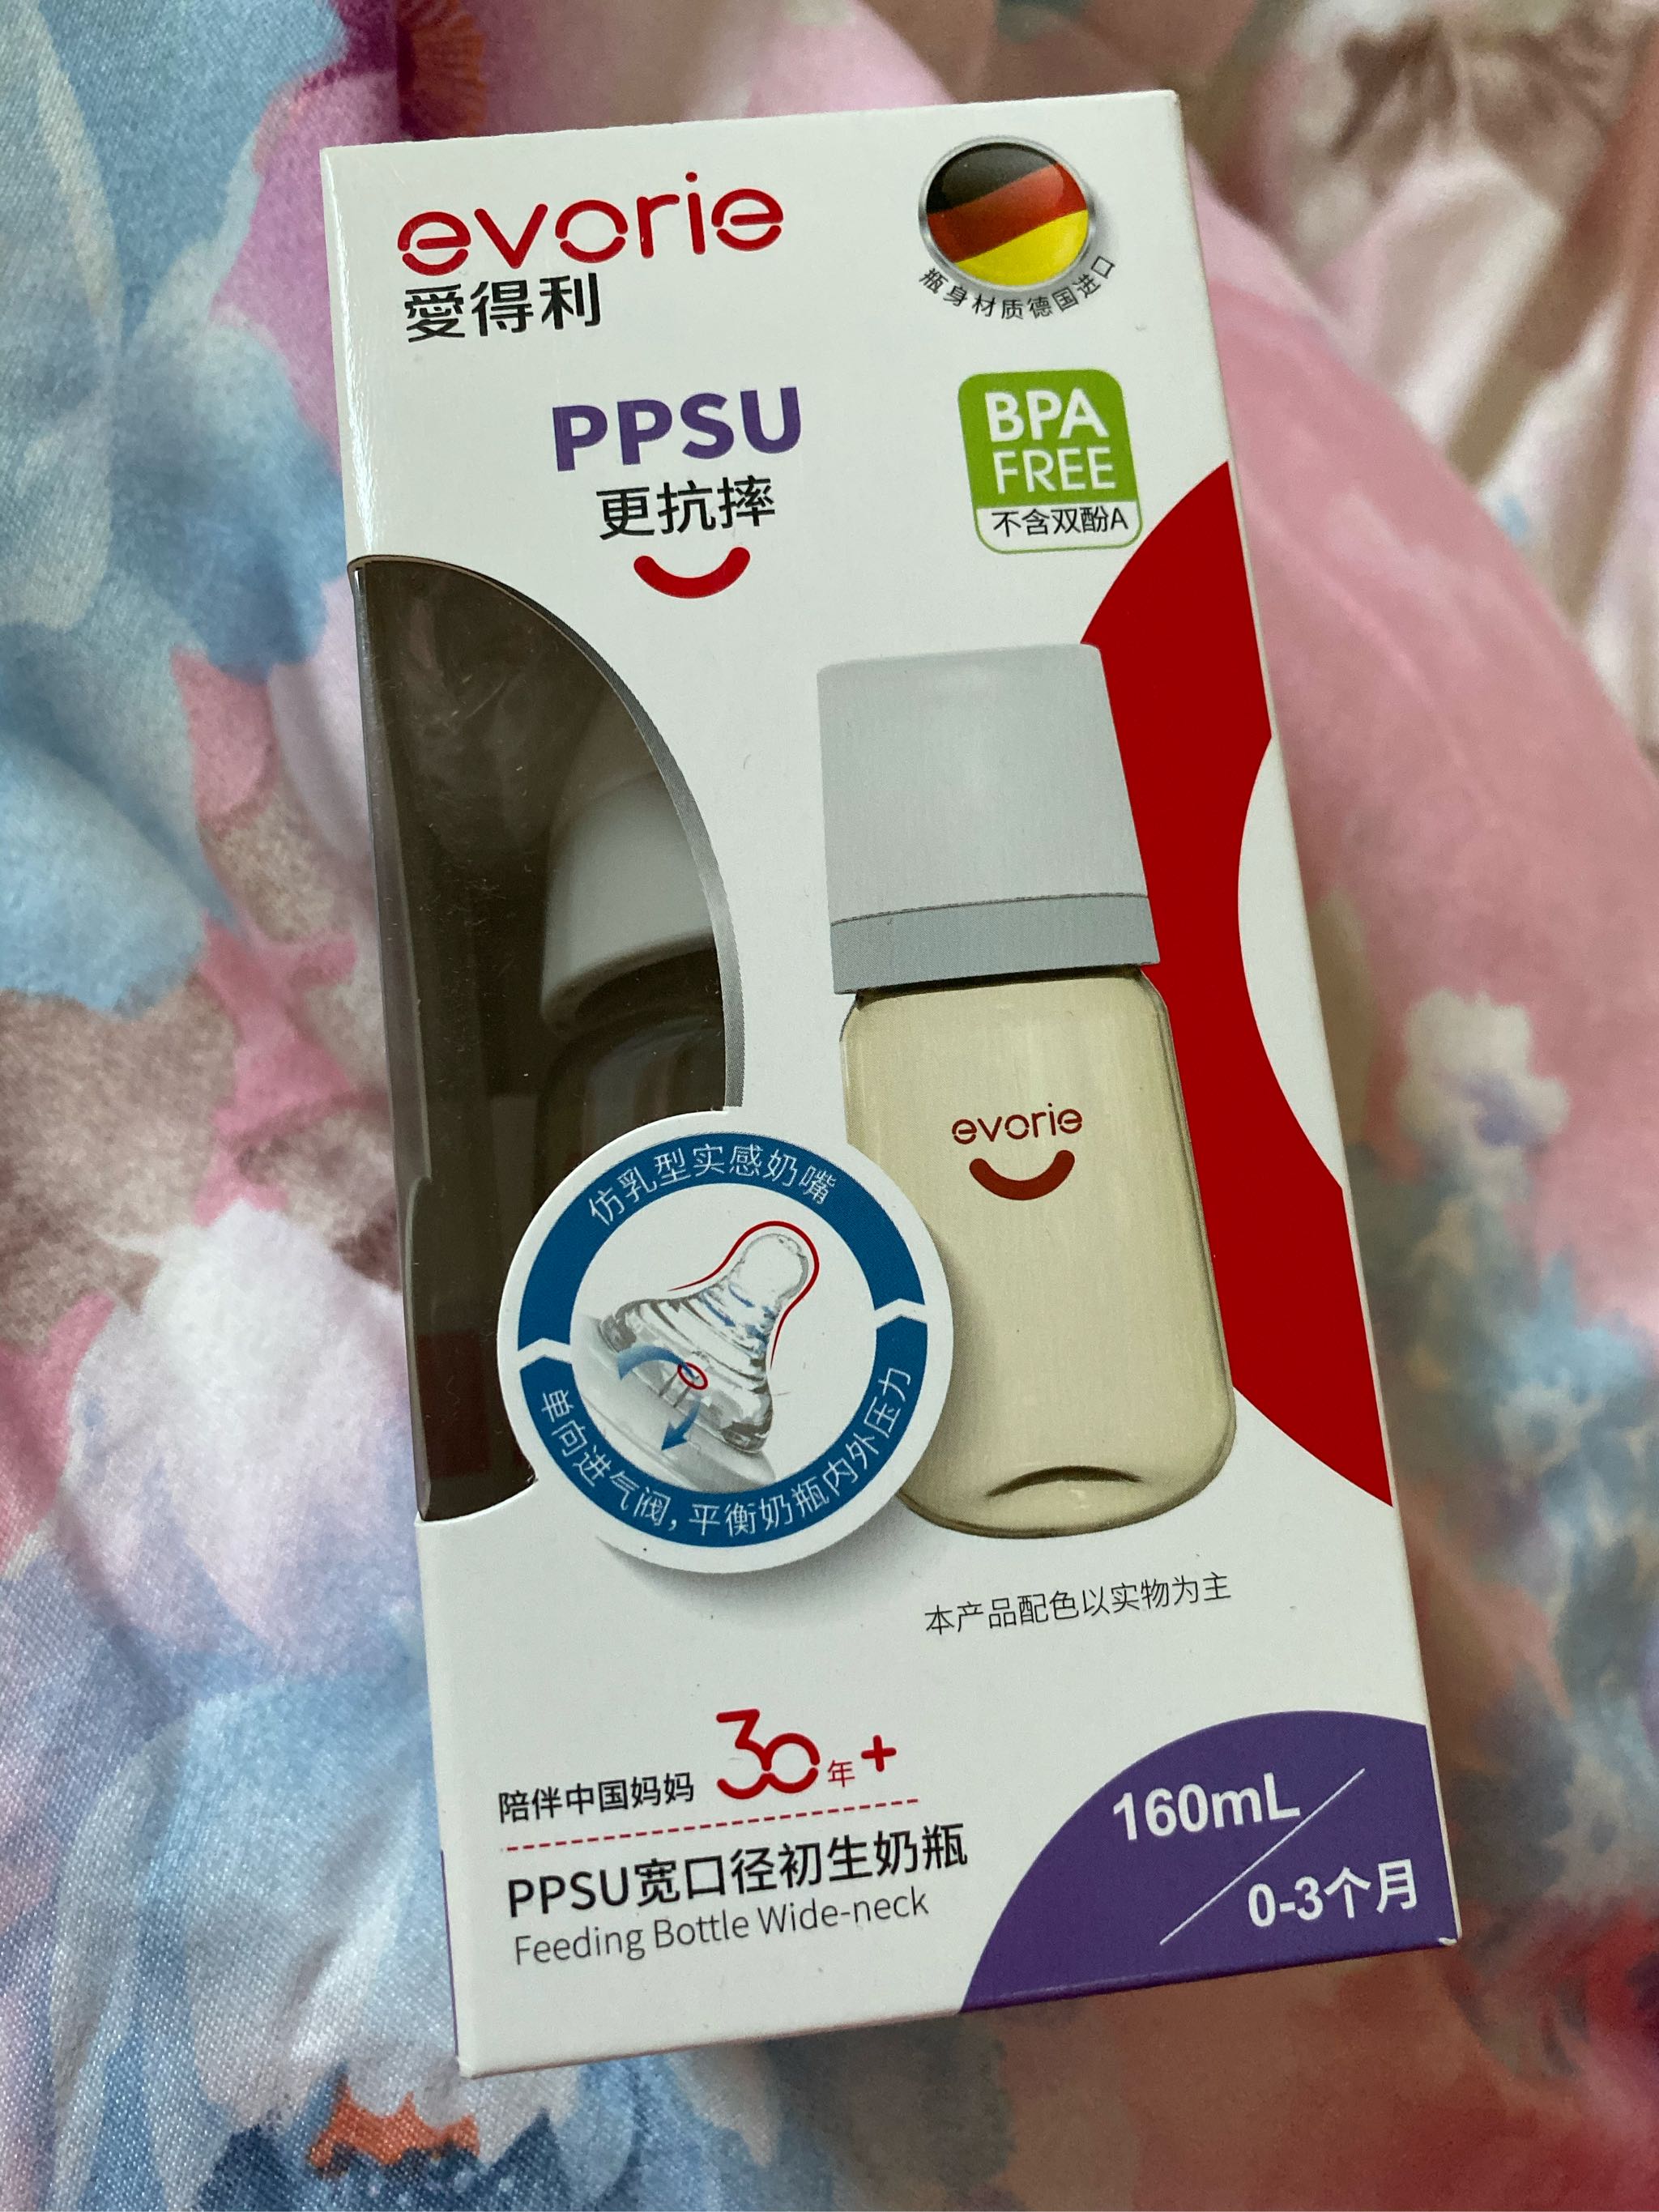 爱得利宽口径PPSU婴儿奶瓶为什么贵值得买吗？使用后效果怎么样